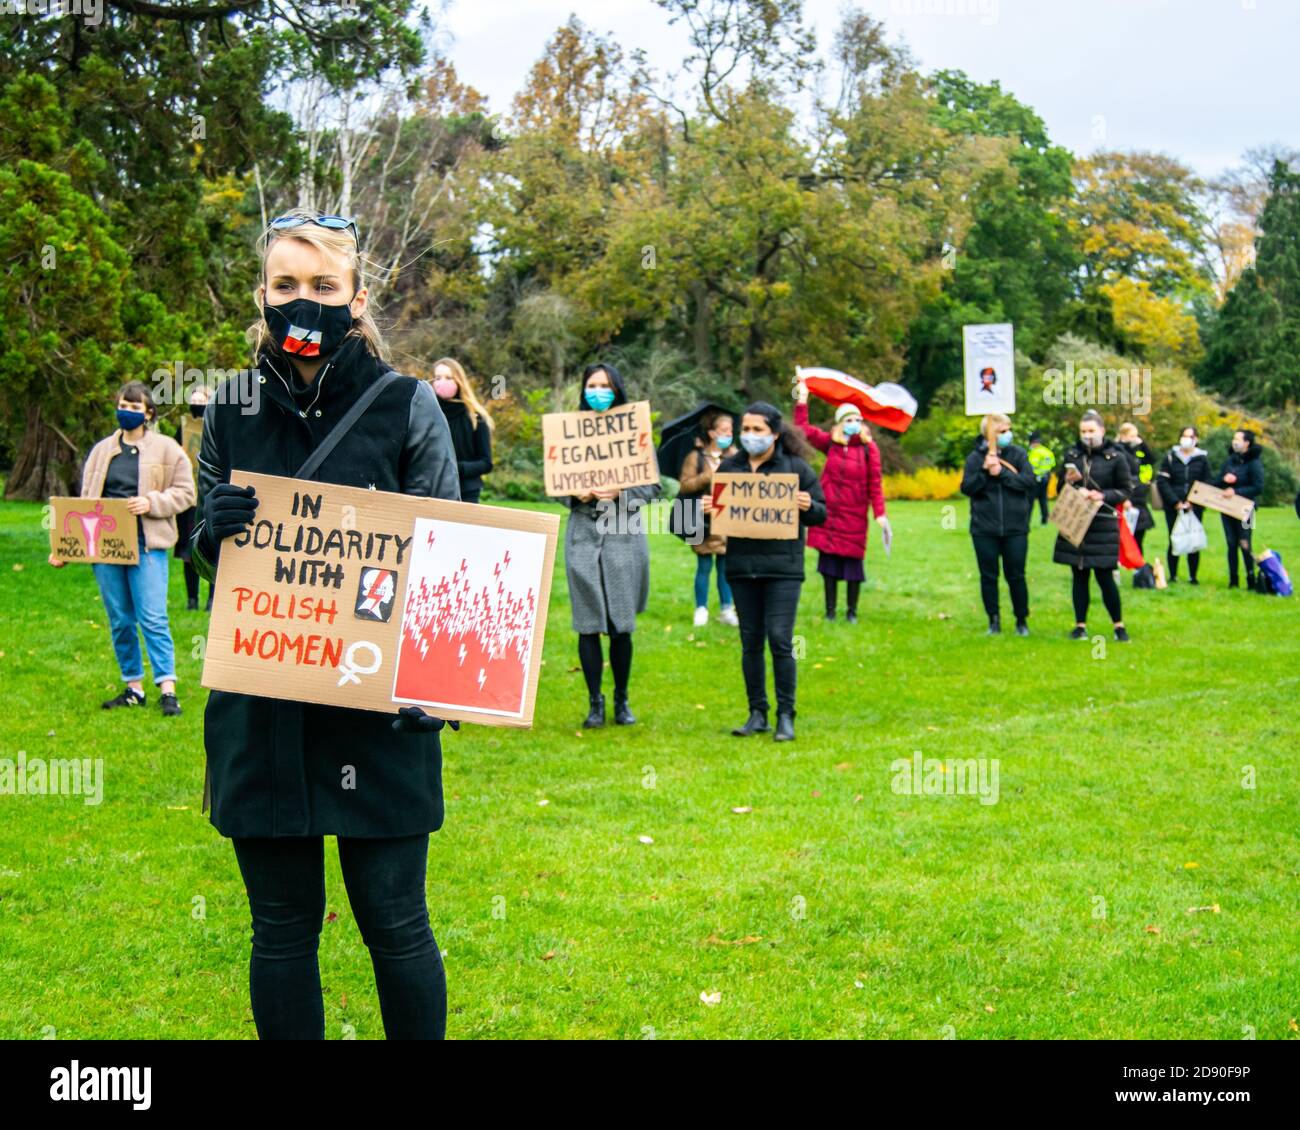 Oxford, Reino Unido - 1 de noviembre de 2020: Protesta pro-elección polaca en los parques universitarios Oxford, la gente protestando contra la ley anti-aborto gobernó Foto de stock